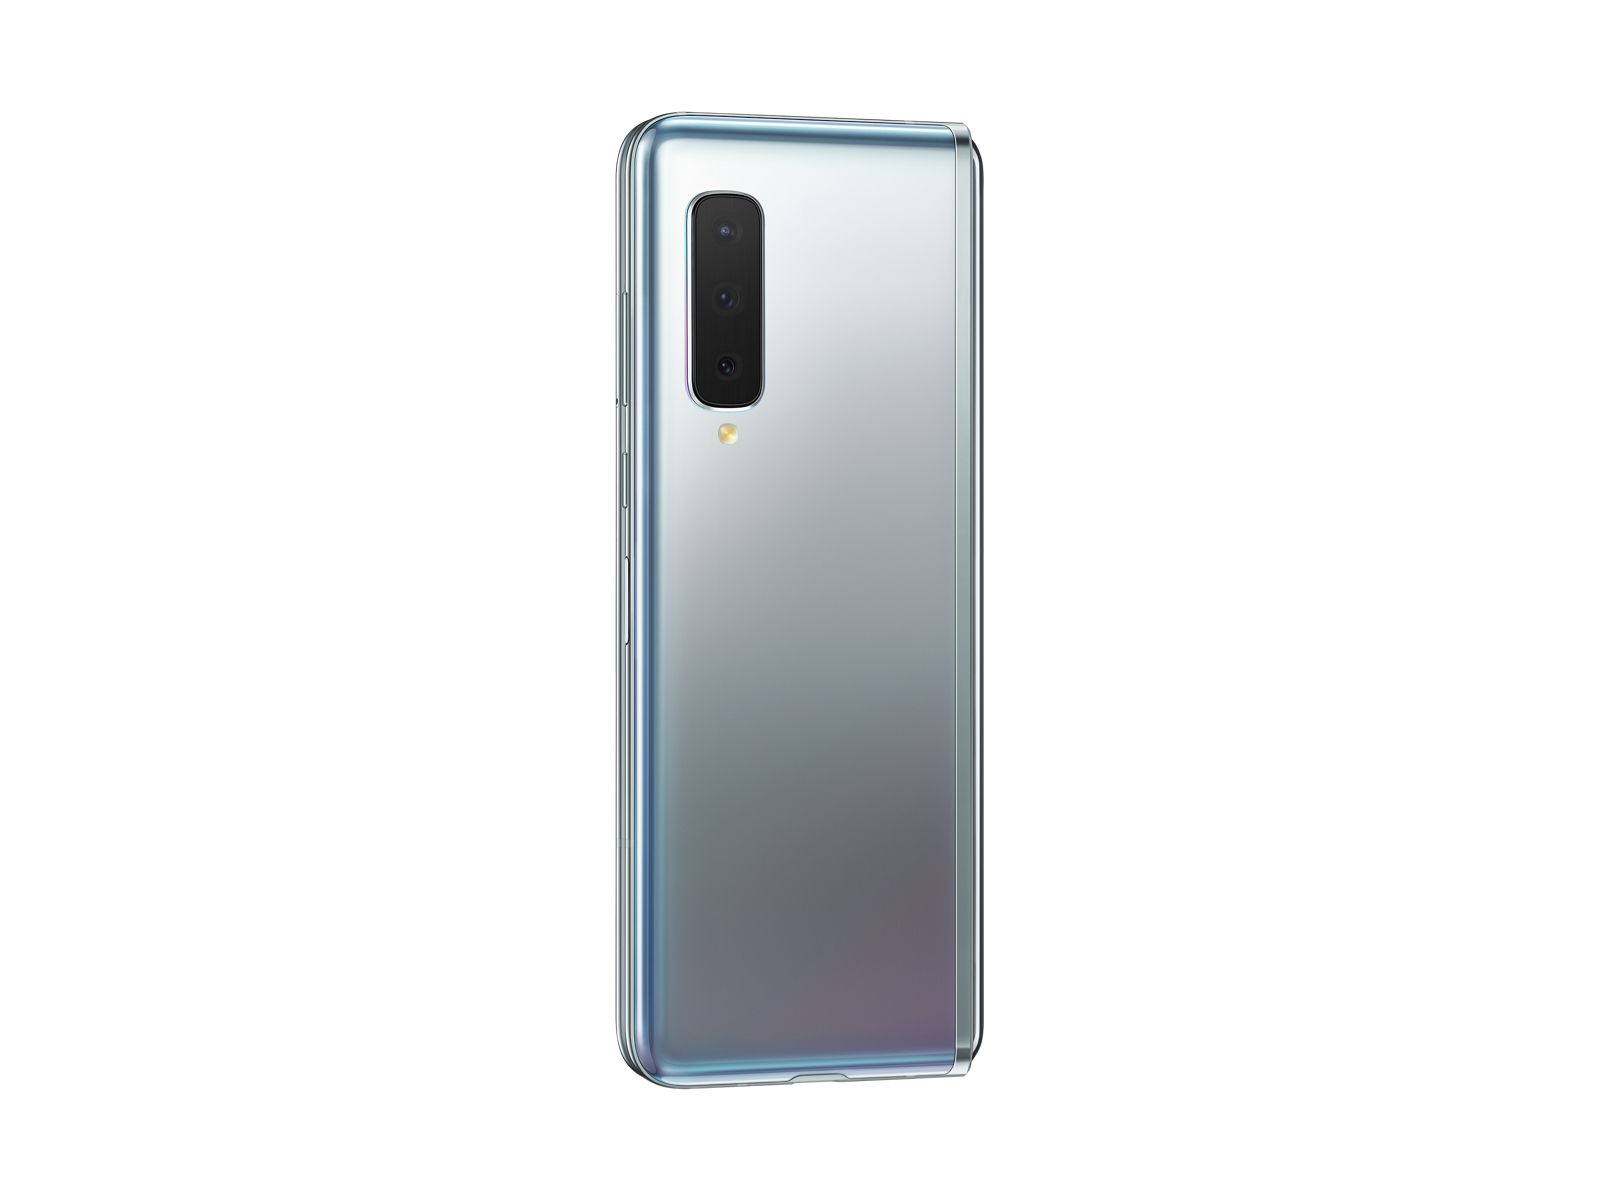 スマートフォン/携帯電話 携帯電話本体 Galaxy Fold 512GB (Unlocked) Phones - SM-F900UZSDXAA | Samsung US